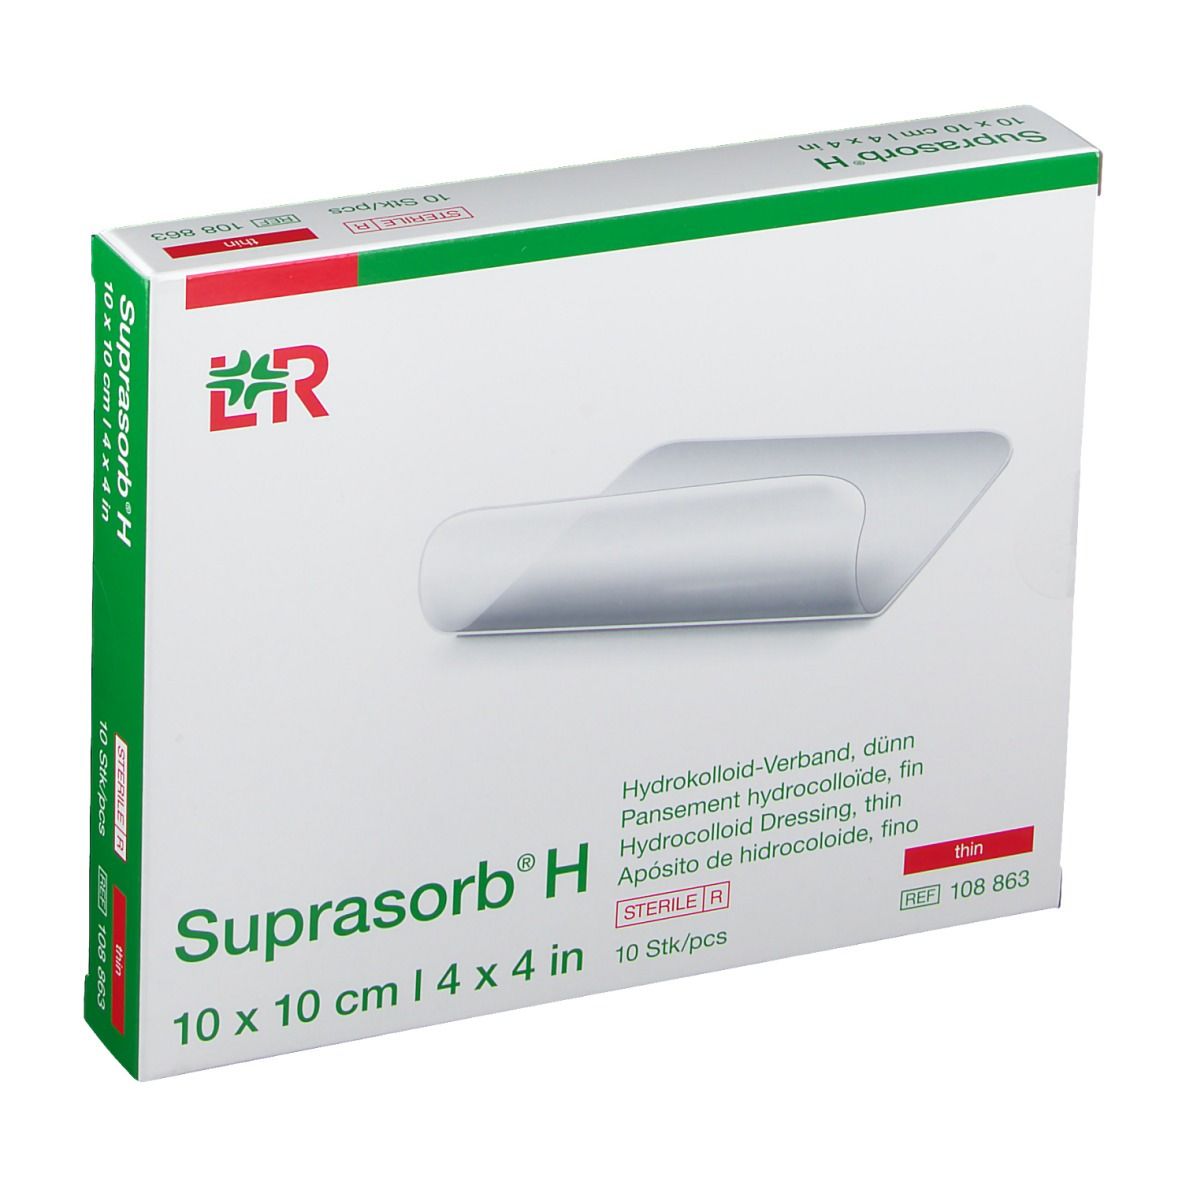 Suprasorb® H Hydrokolloid-Verband dünn 10 x 10 cm